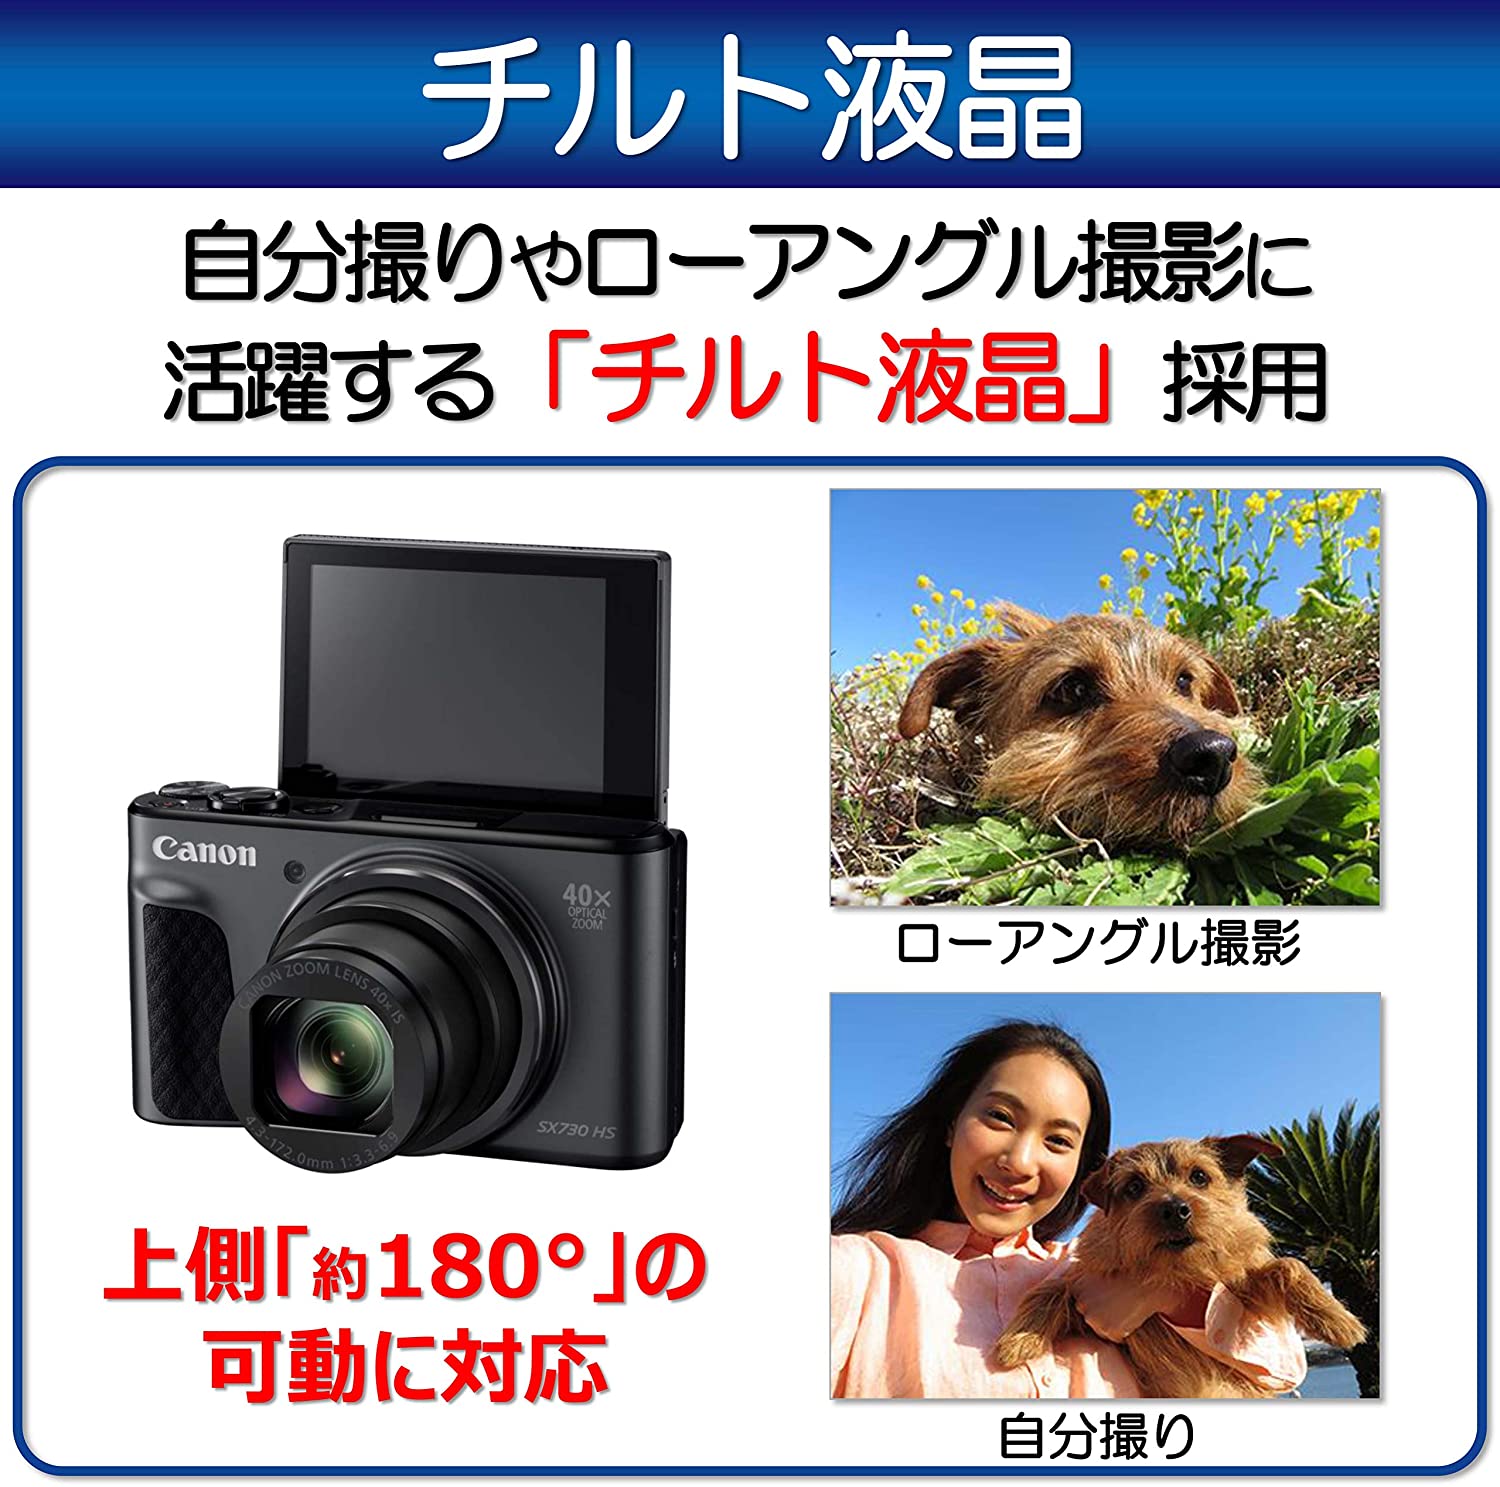 【Canon】デジタルカメラ SuperPowerShot HS 光学40倍ズーム |開業・開店・移転祝いにWebカタログギフト「オフィスギフト」